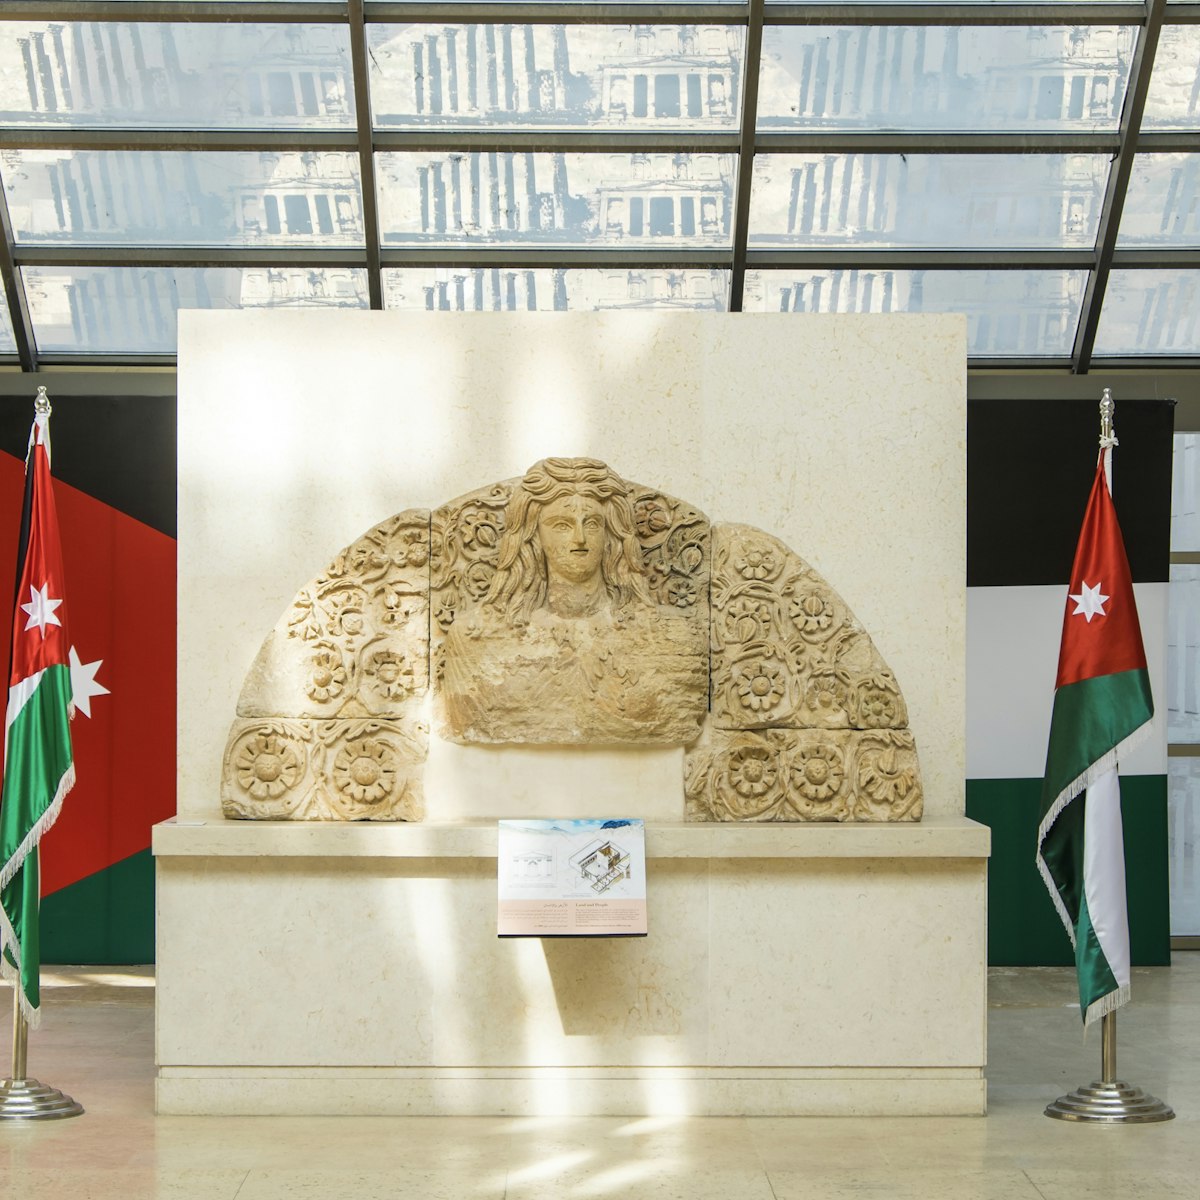 The Jordan Museum, Amman, Jordan